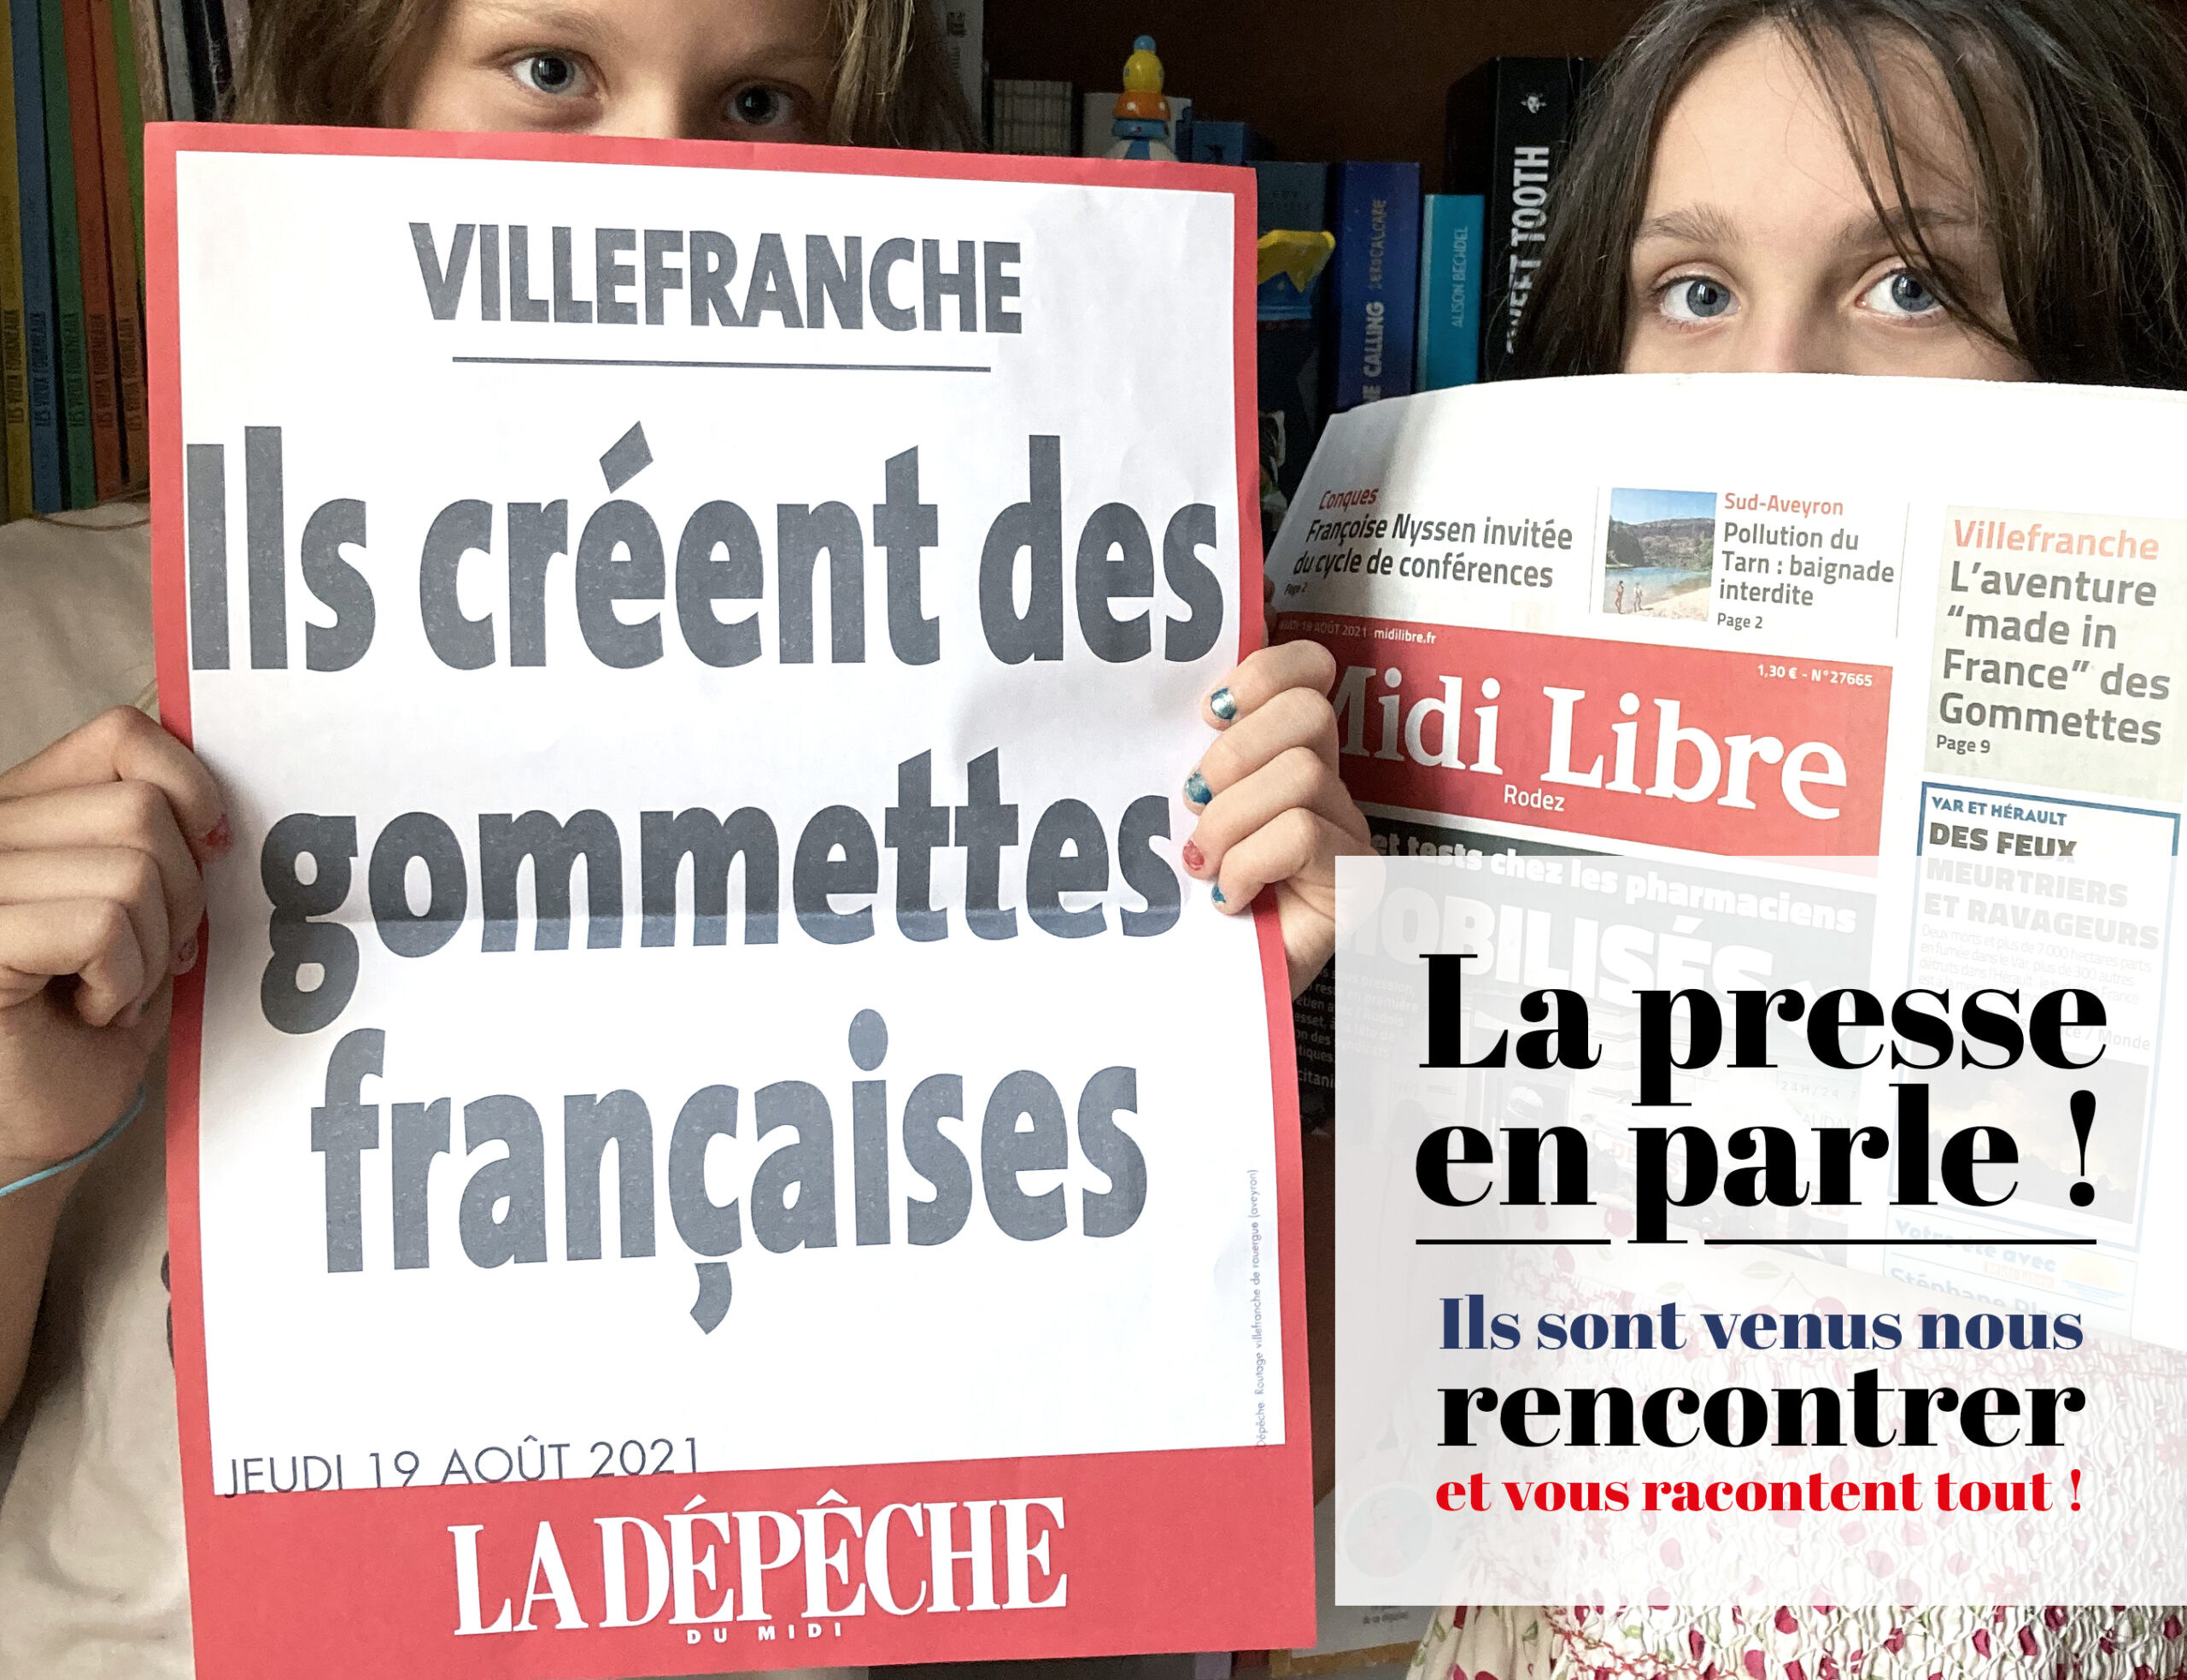 La presse en parle | Les gommettes françaises | Made in France